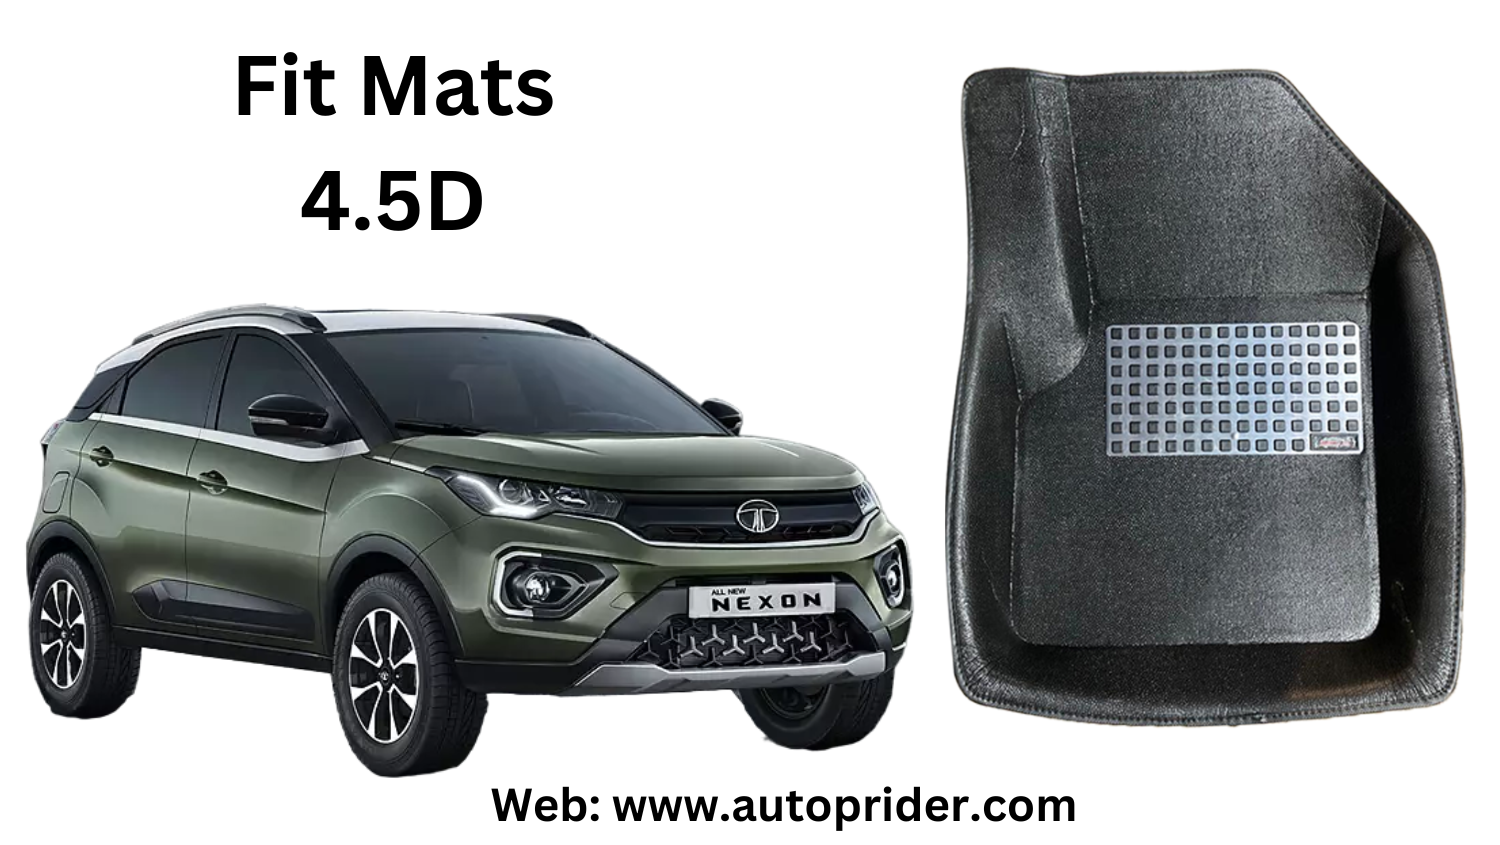 Autoprider | Fit Mats 4.5D Economy Car Mats for Tata Nexon